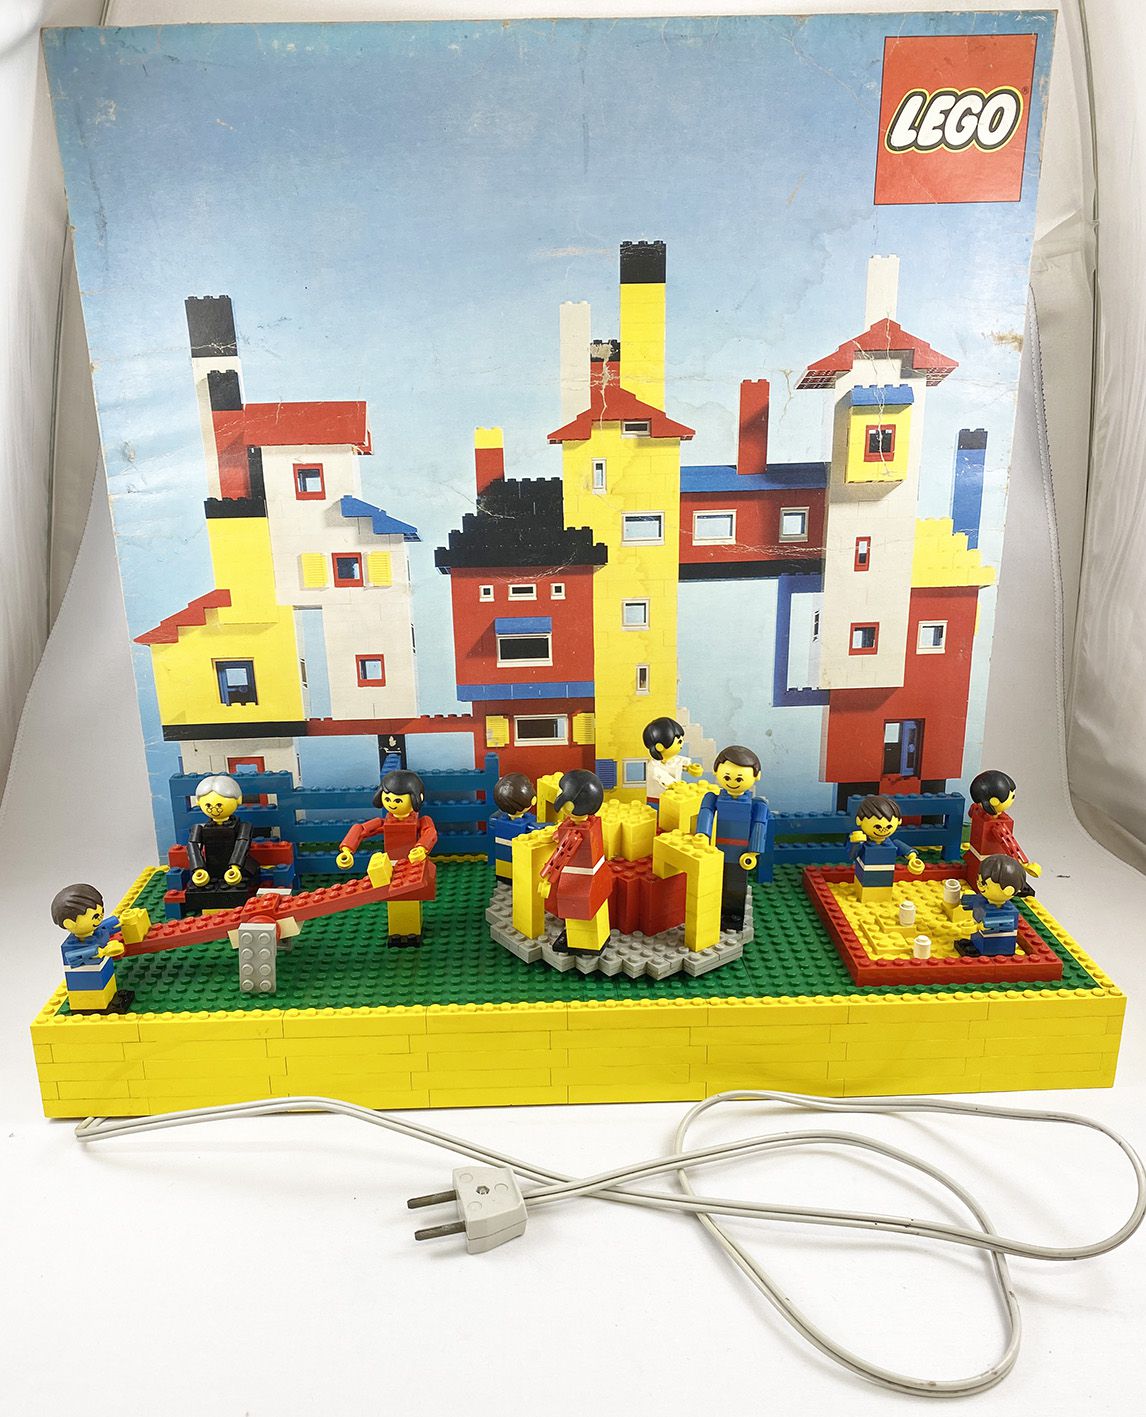 LEGO Playground - Motorized (1974)